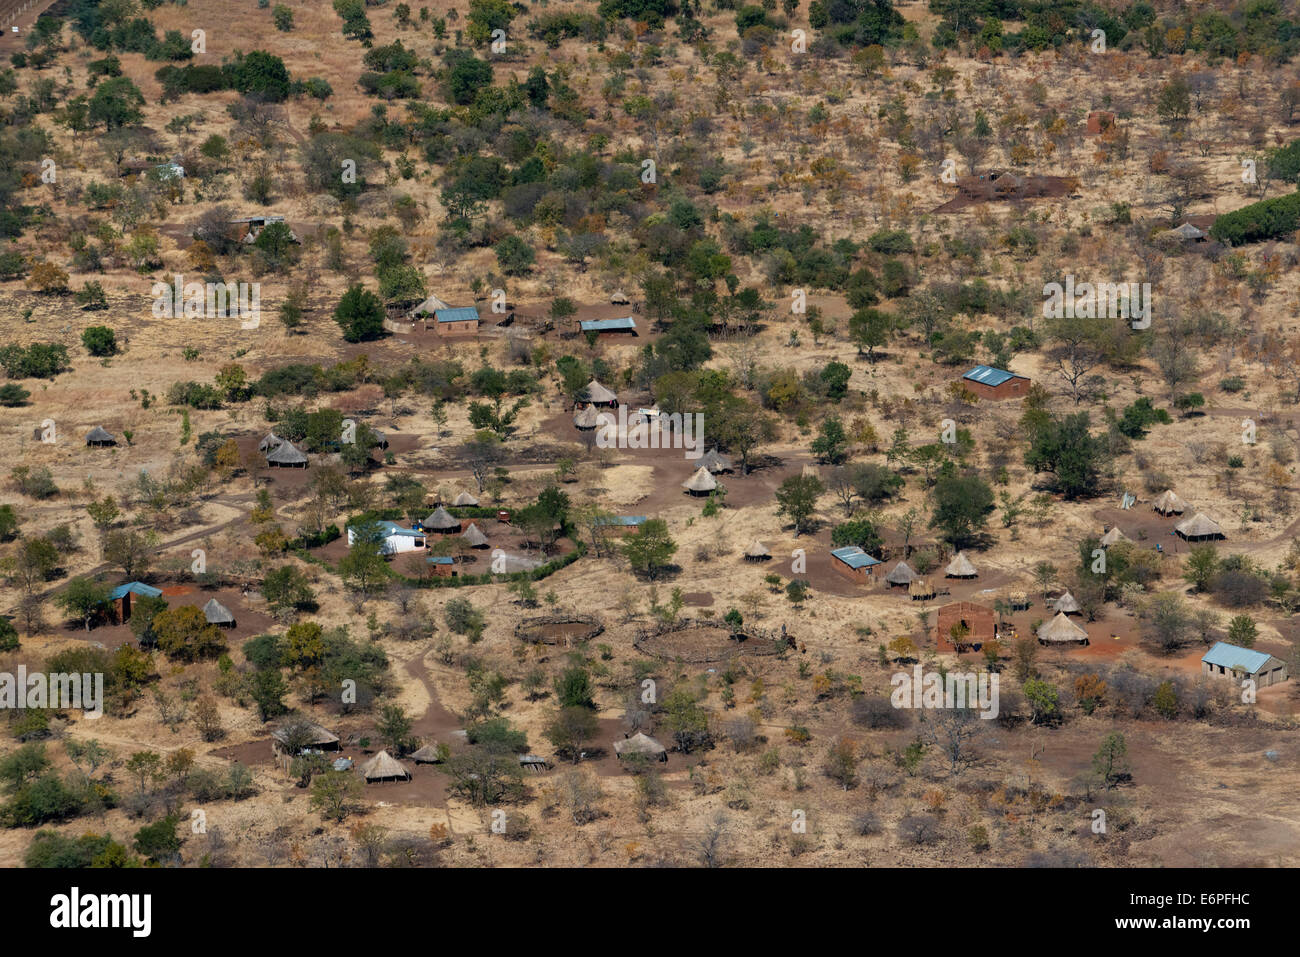 Luftaufnahmen des Mukuni Village. Sambia. Mukuni, 9,6 km (6,0 km) südöstlich des heutigen Livingstone, war der größte vi Stockfoto